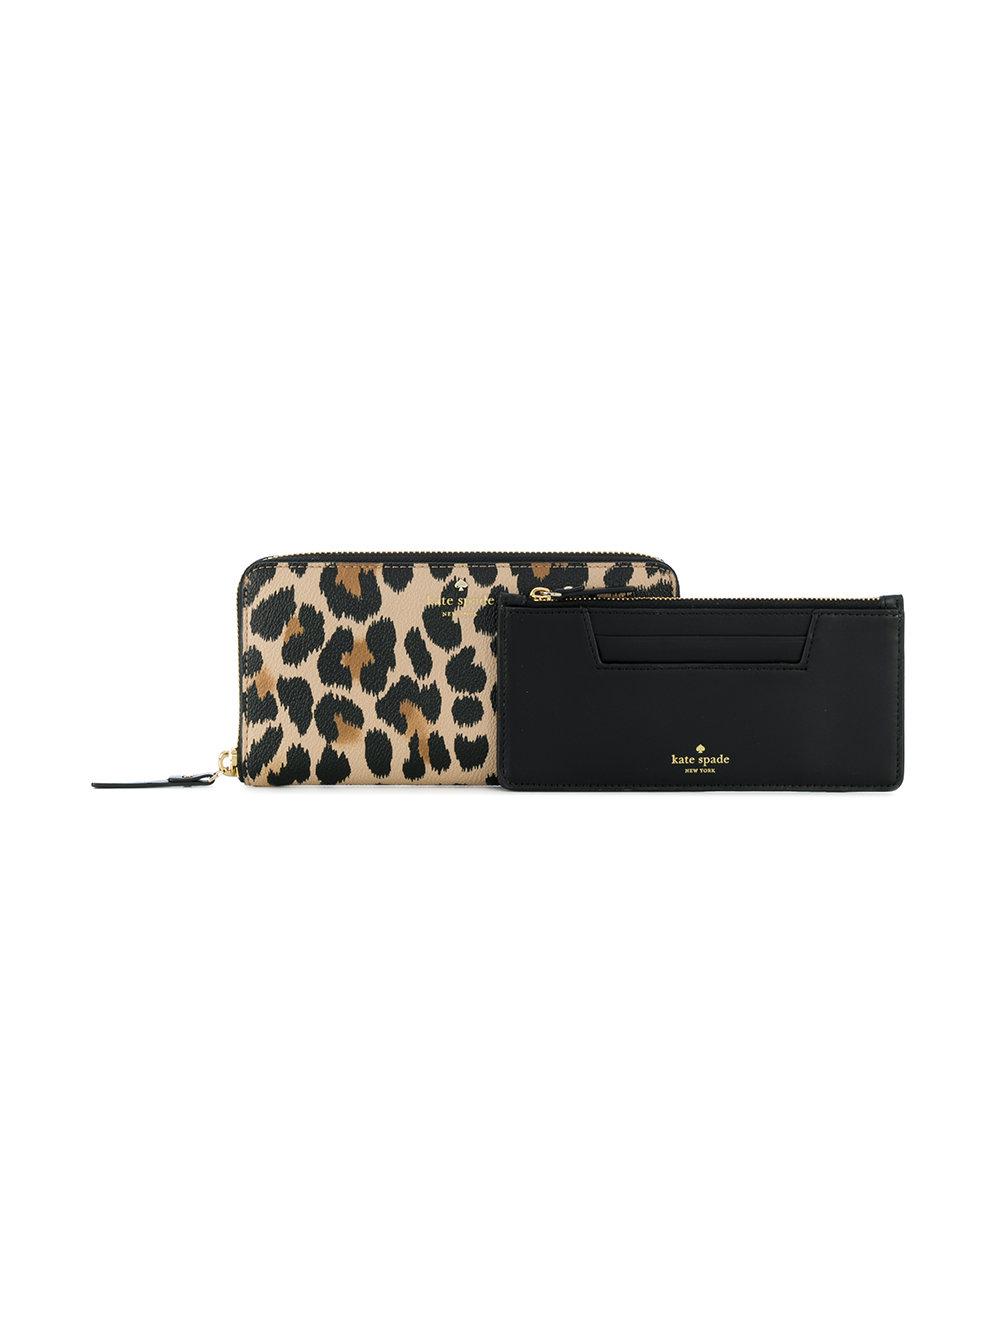 Kate Spade Leopard Print Wallet in Brown | Lyst